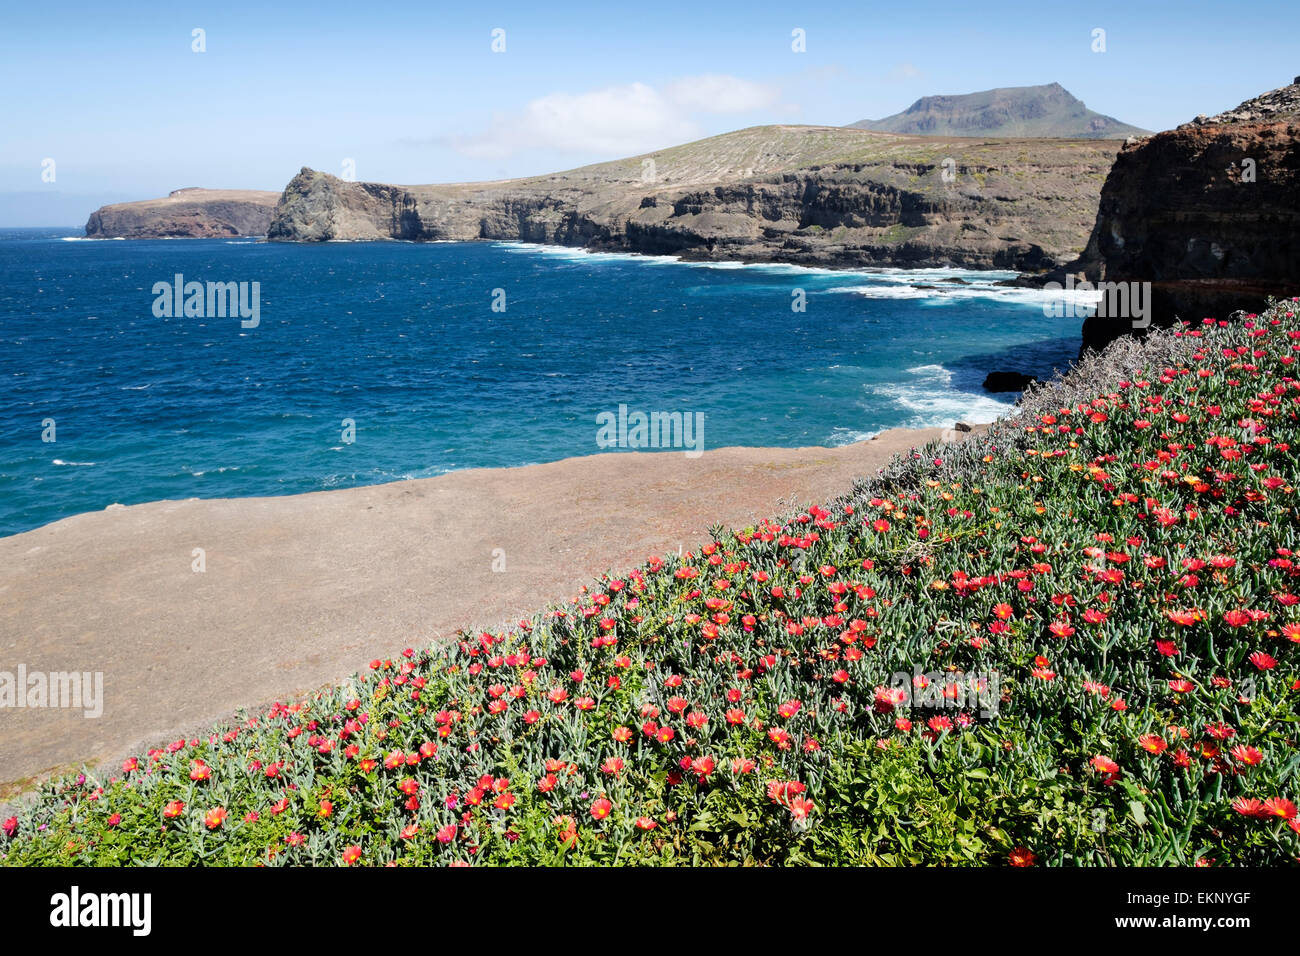 Delosperma Dyeri flowering on the coast at Puerto de Las Nieves, Agaeto, Gran Canaria, Spain Stock Photo